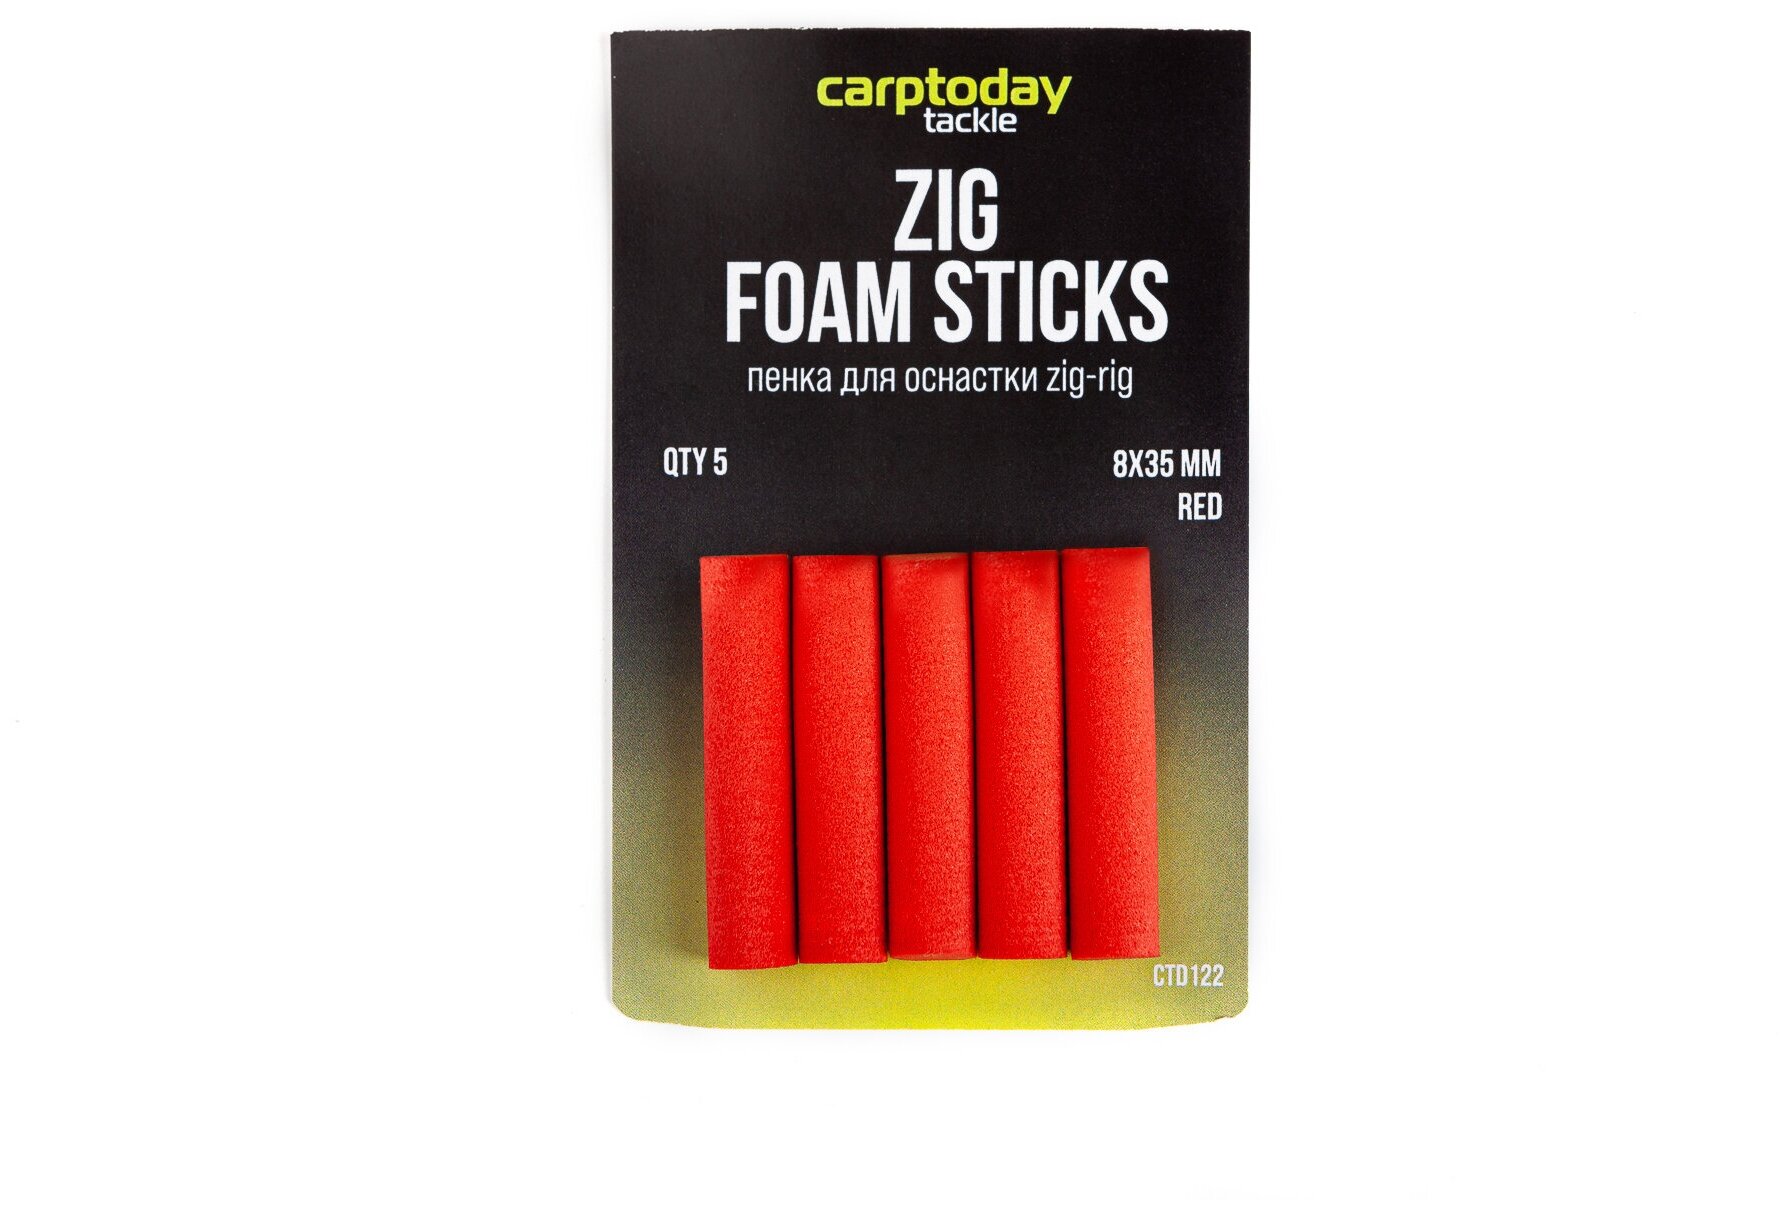 Пенки для оснастки зиг риг Carptoday Tackle Foam Sticks красные